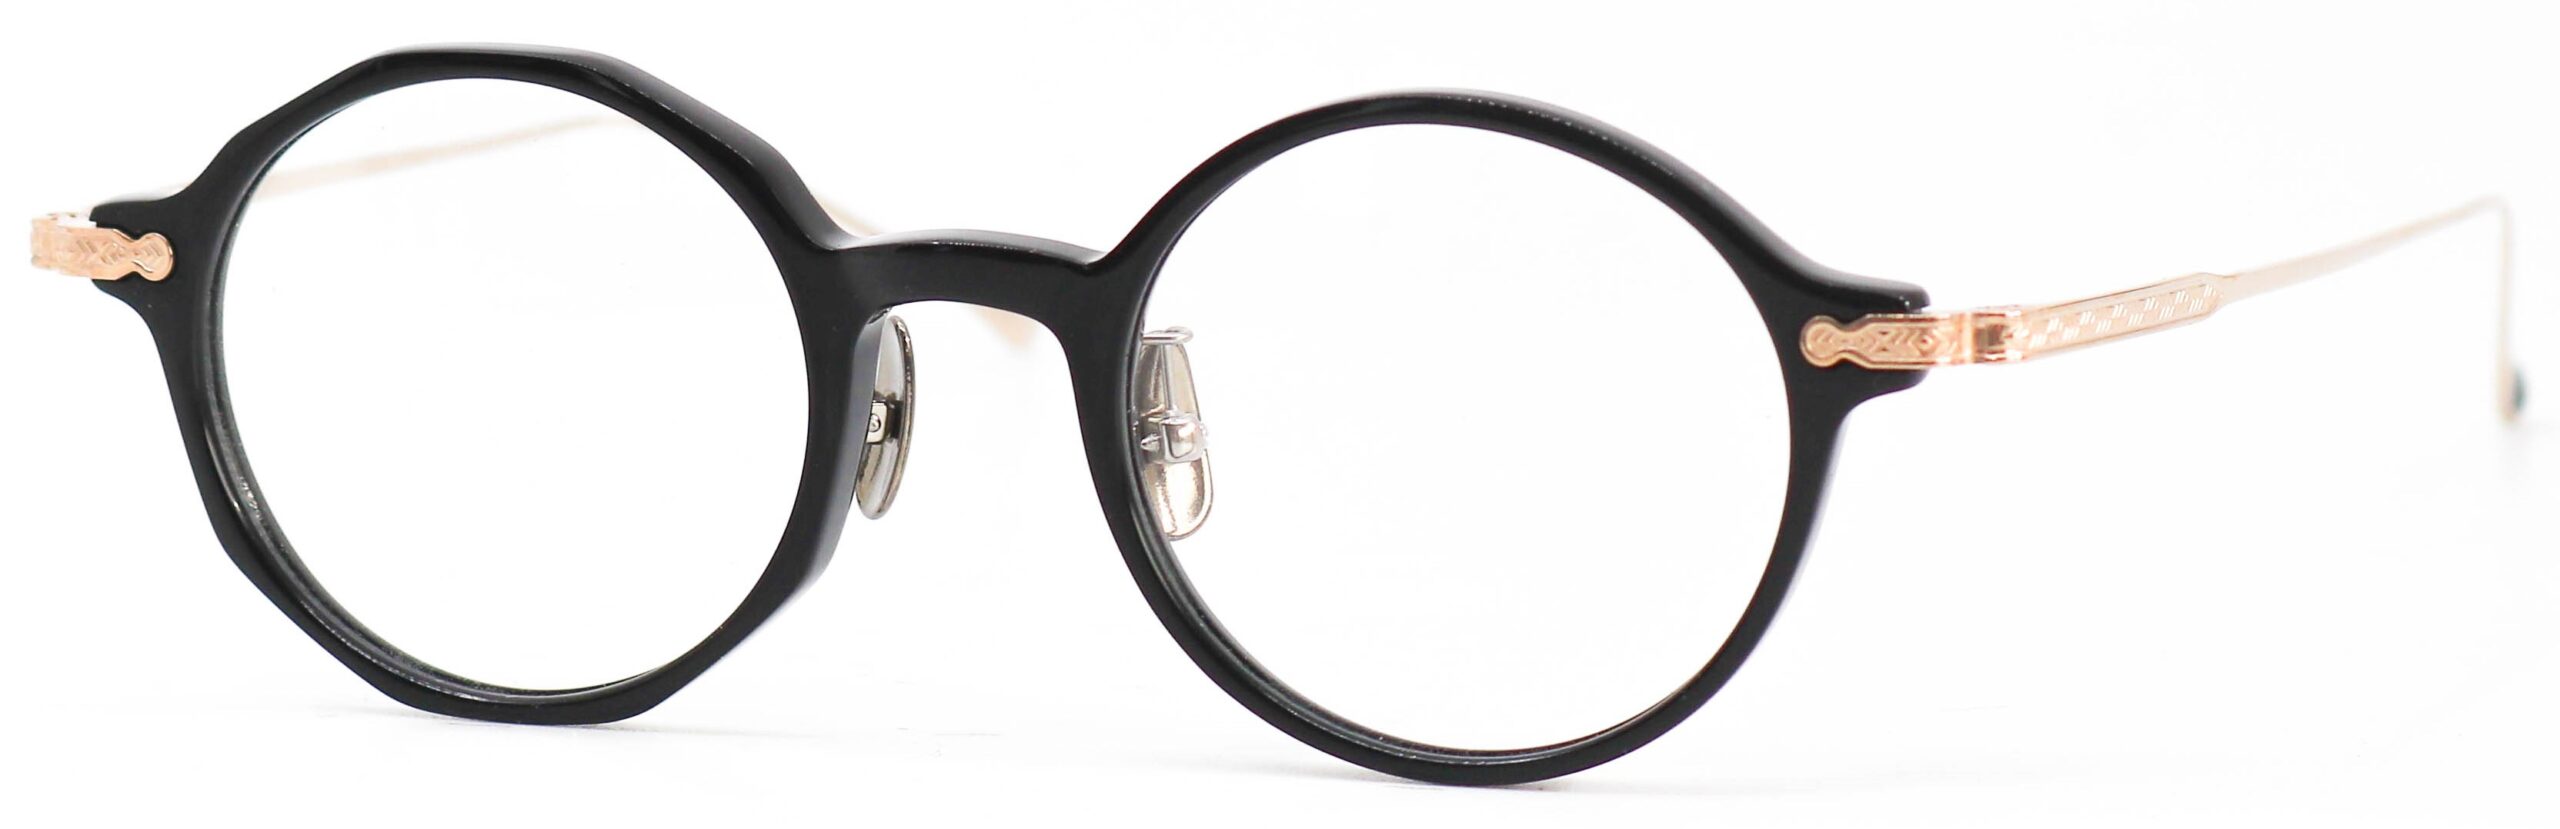 眼鏡のカラータイプC-1 Black/Gold